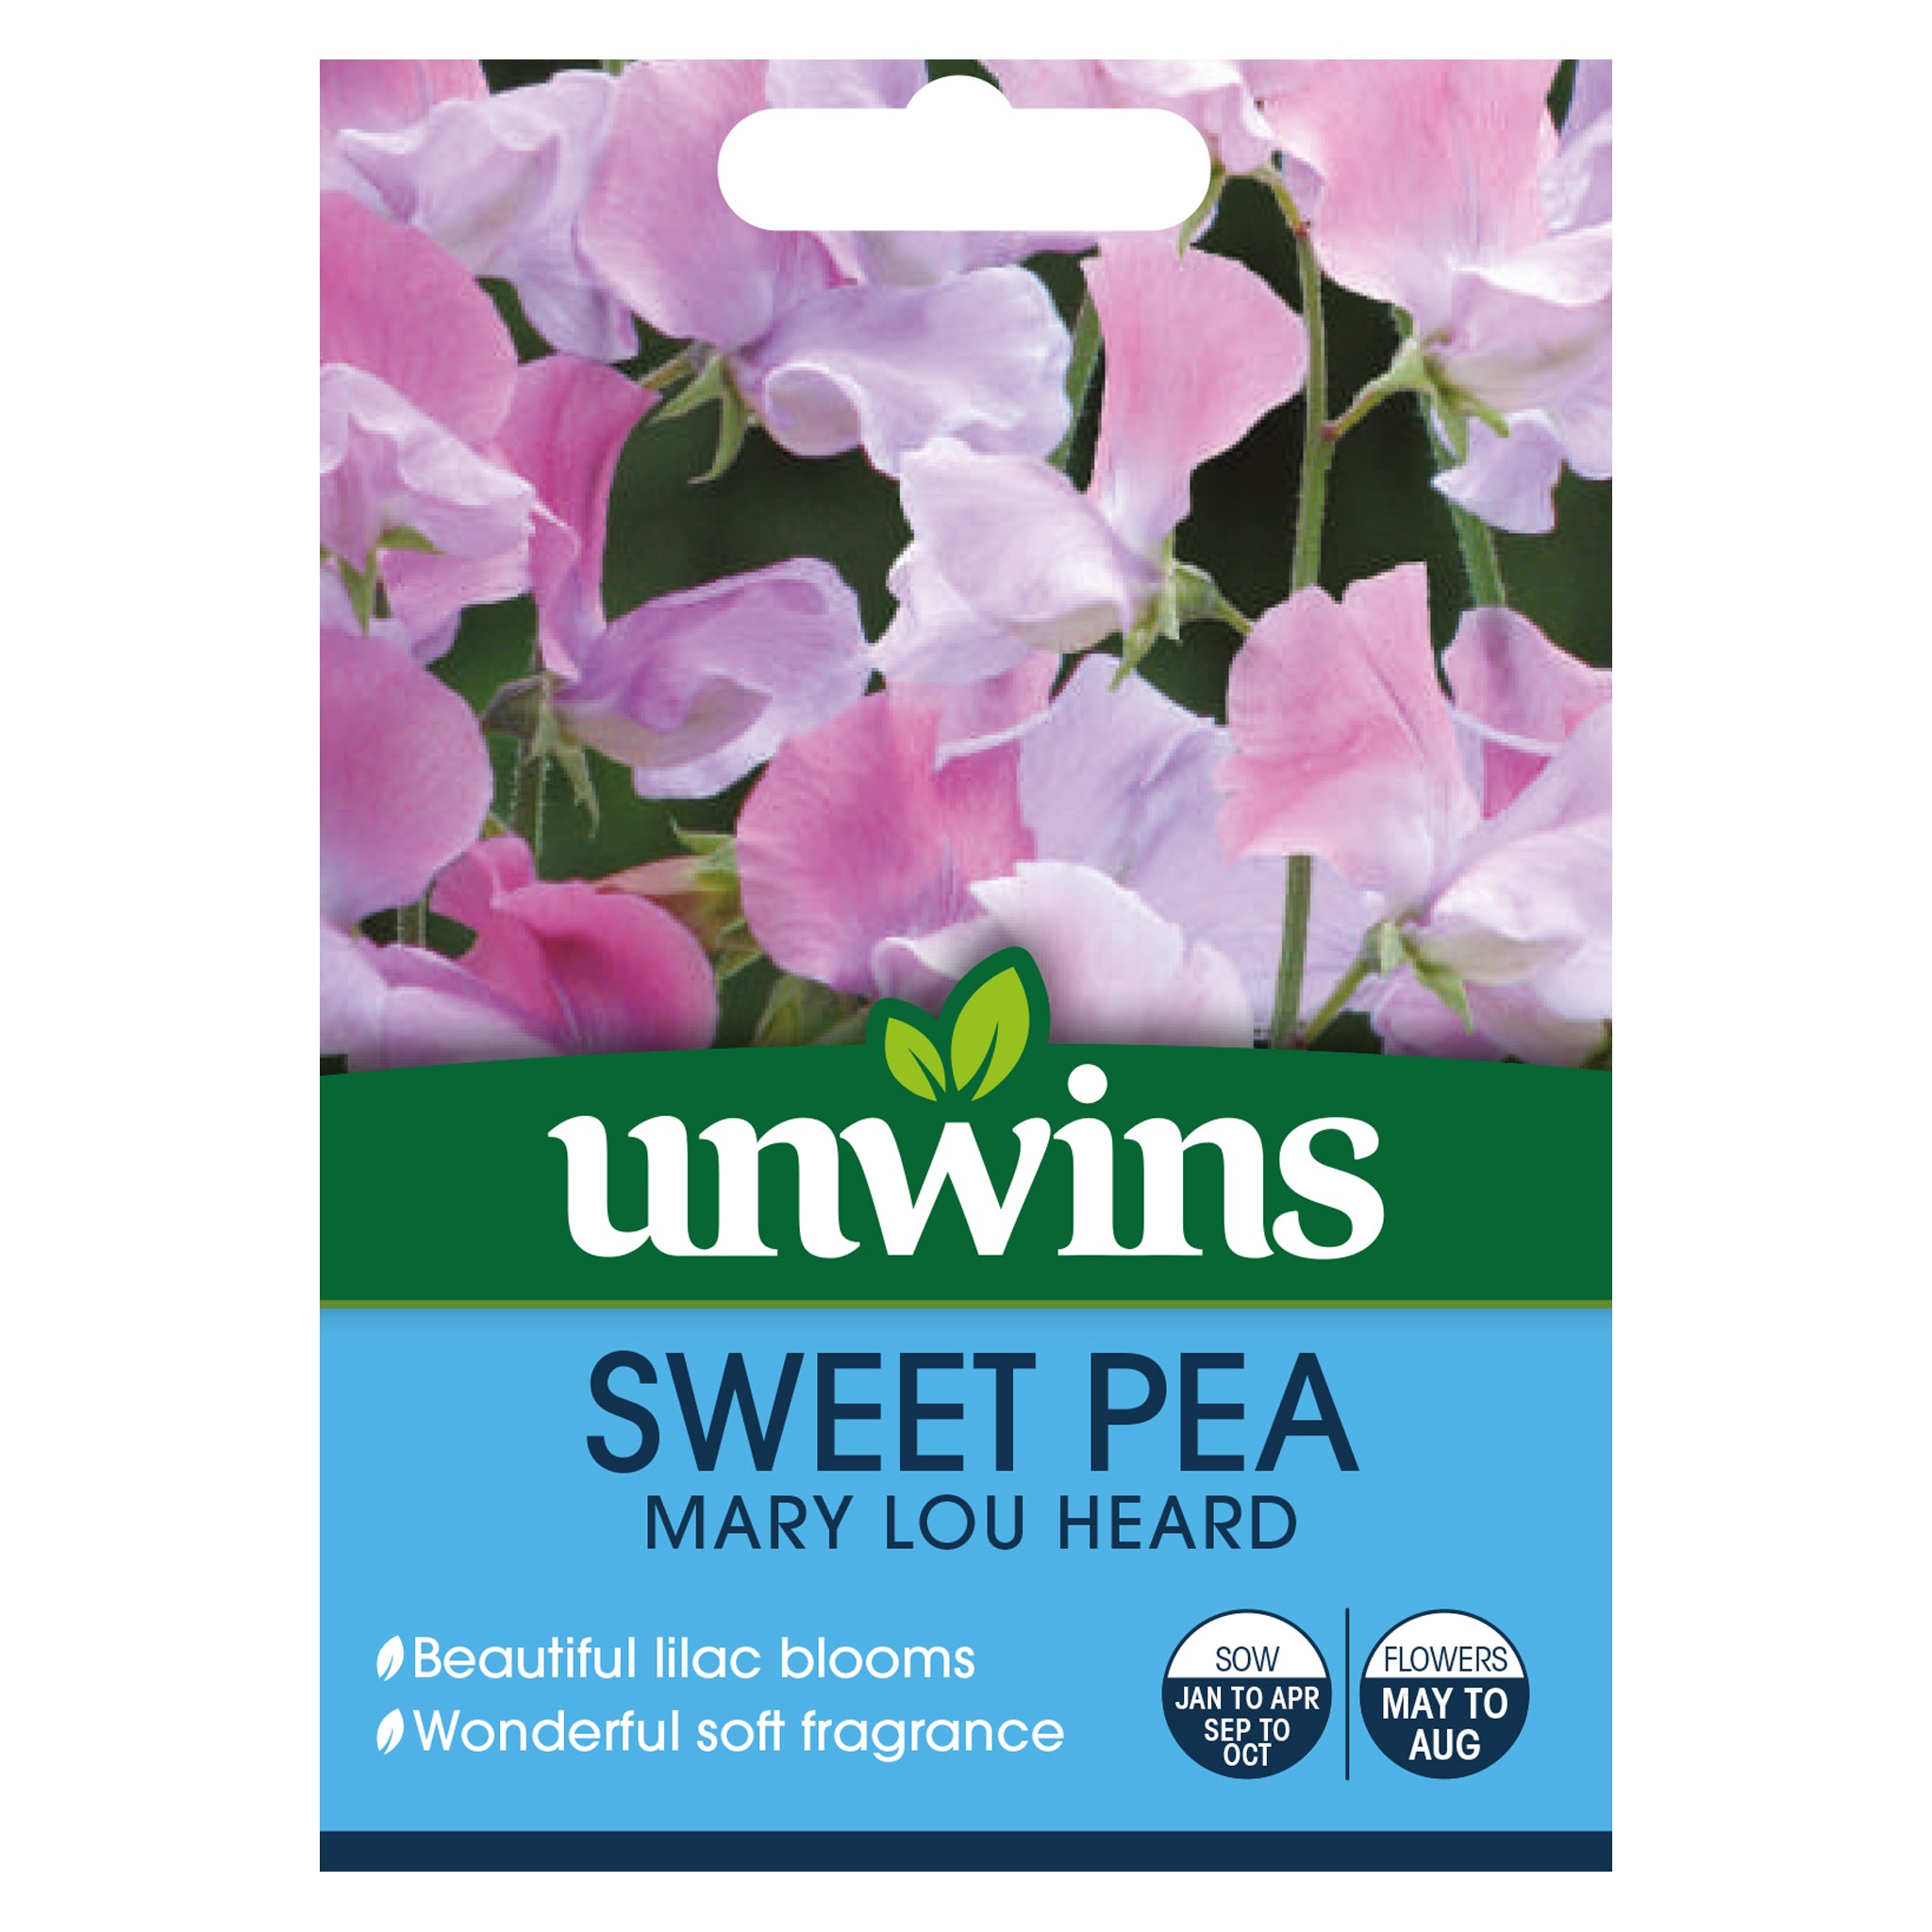 Unwins Sweet Pea Mary Lou Heard Seeds